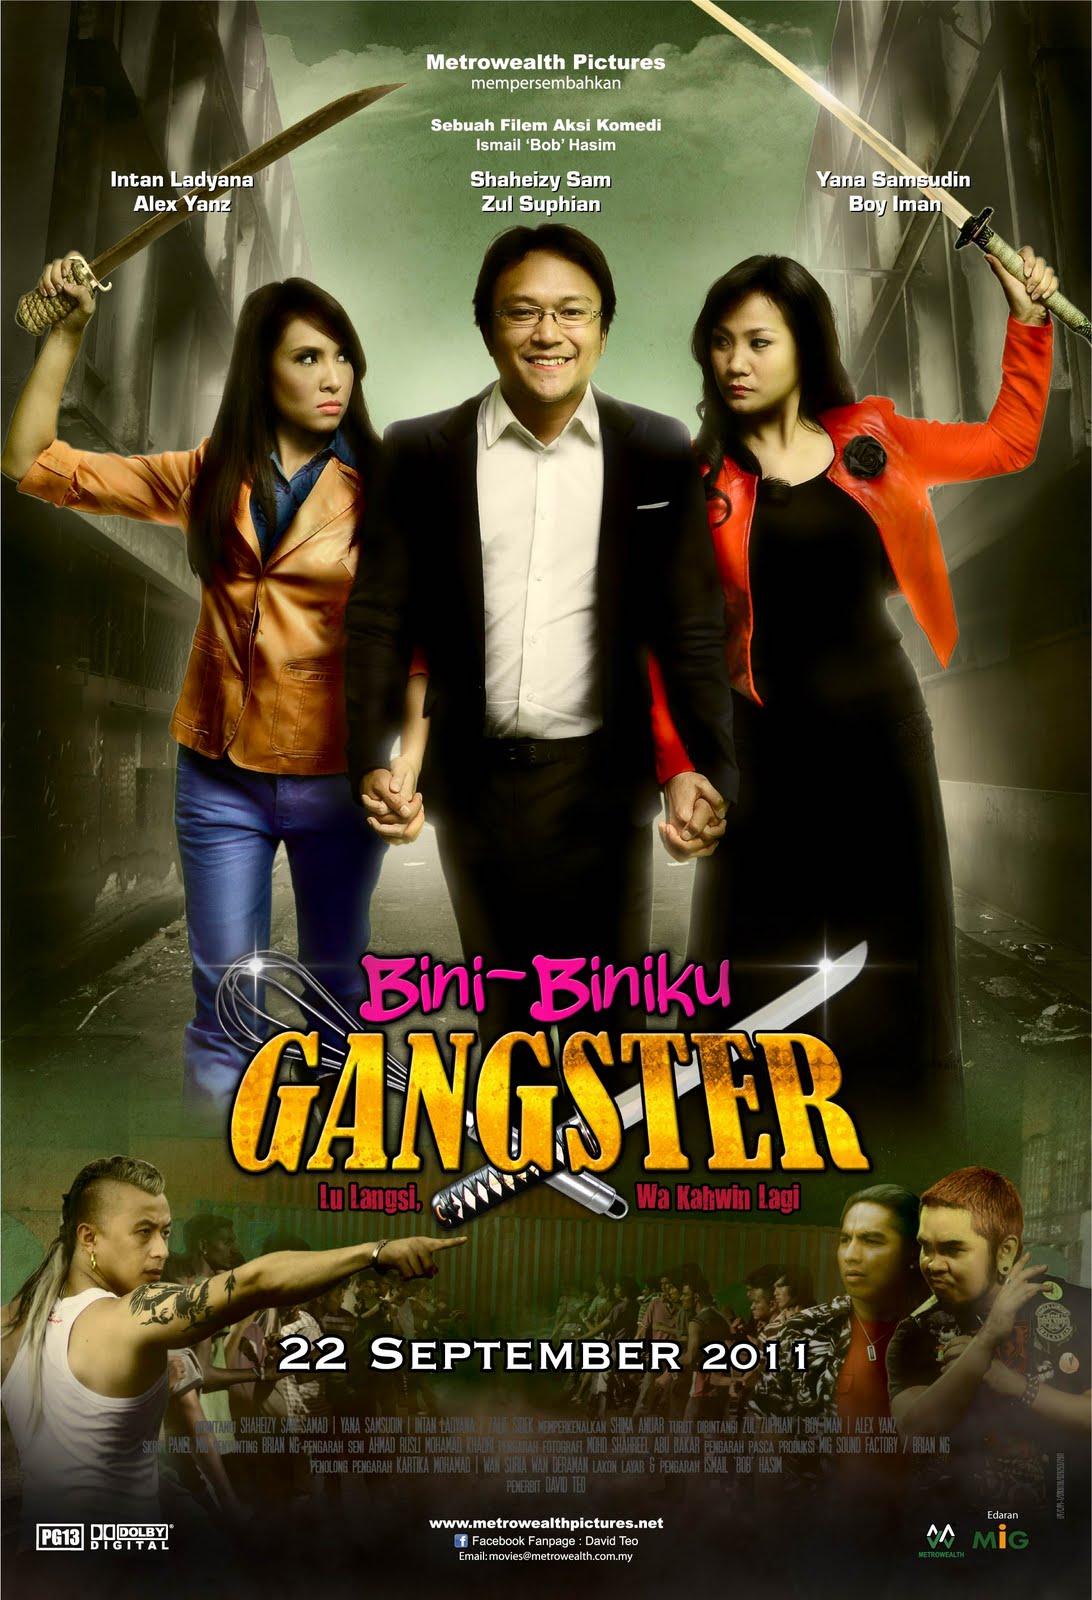 Bini-biniku gangster movie